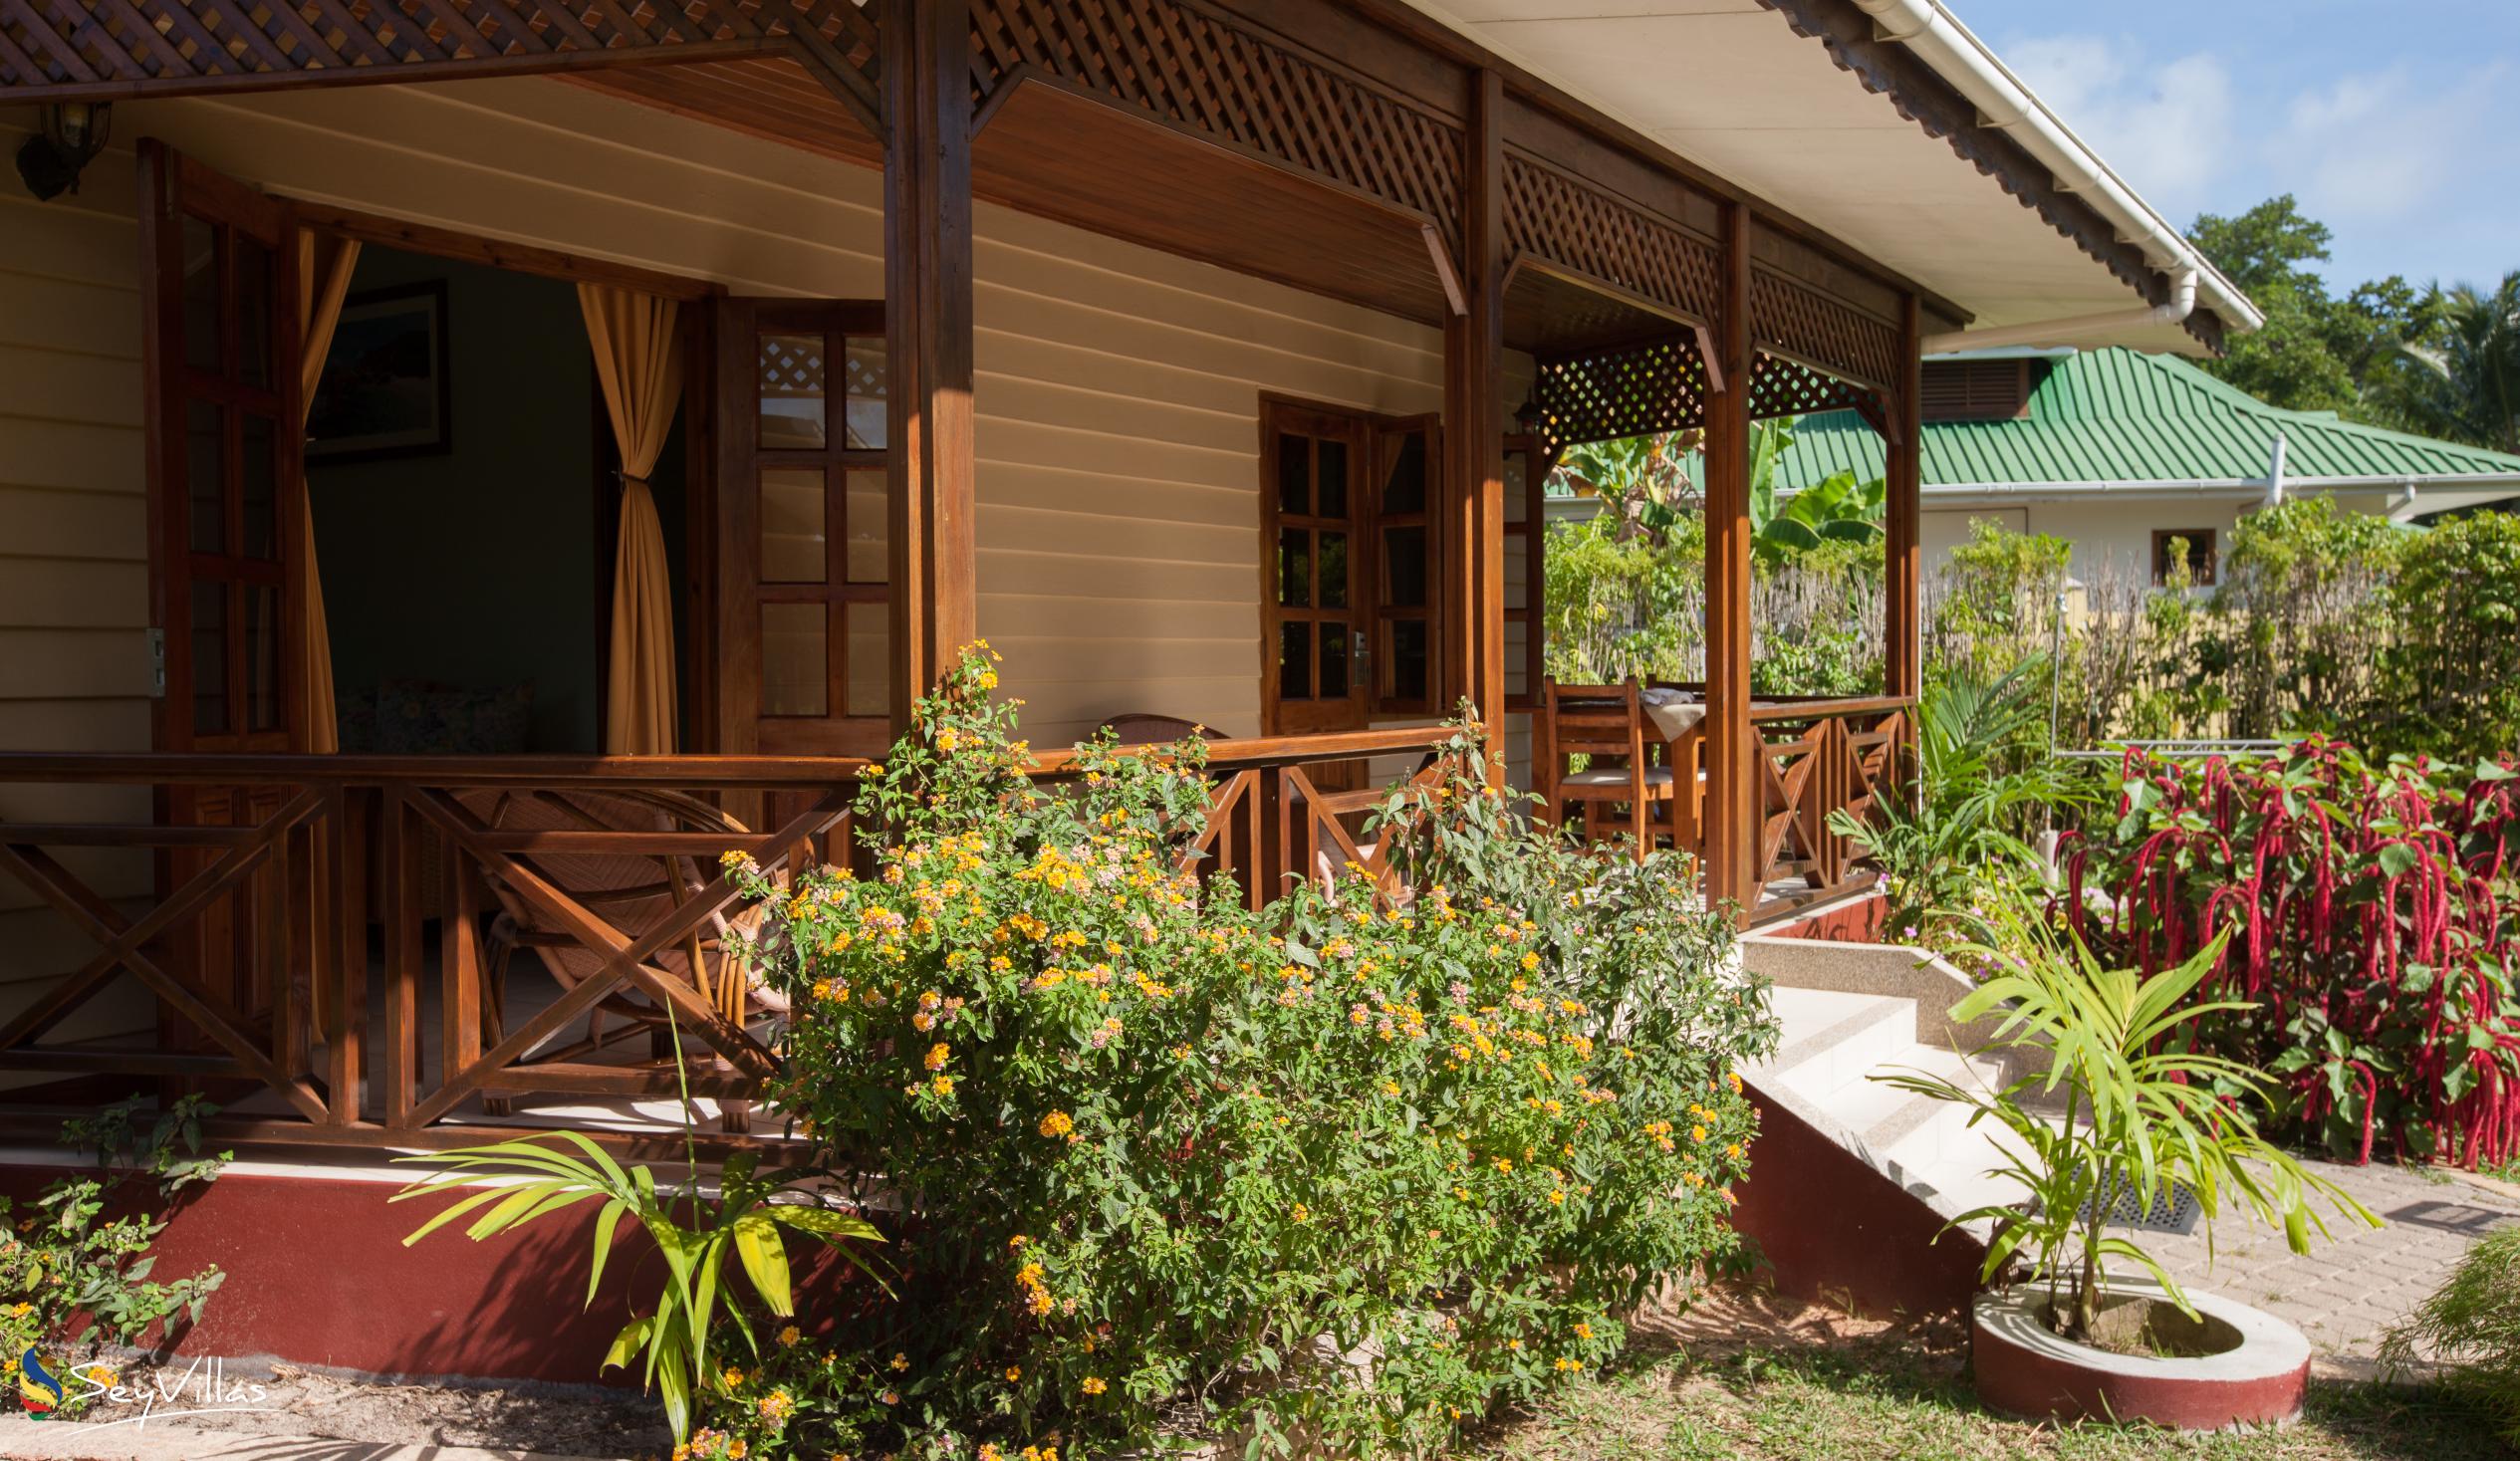 Photo 8: Villa Creole - Outdoor area - La Digue (Seychelles)